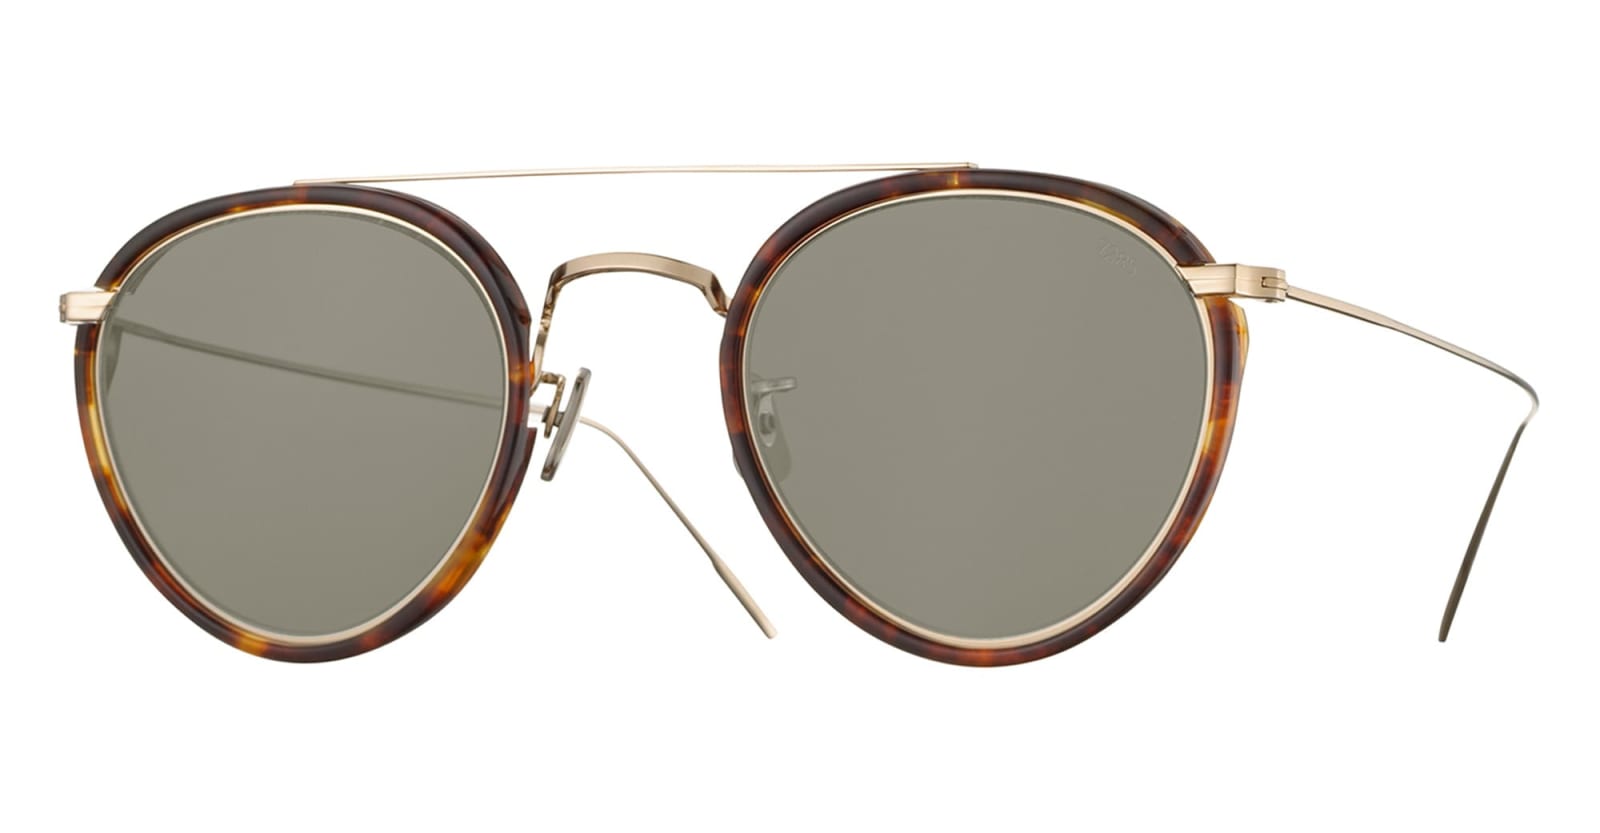 Eyevan 7285 762 - Tortoise Sunglasses In Brown